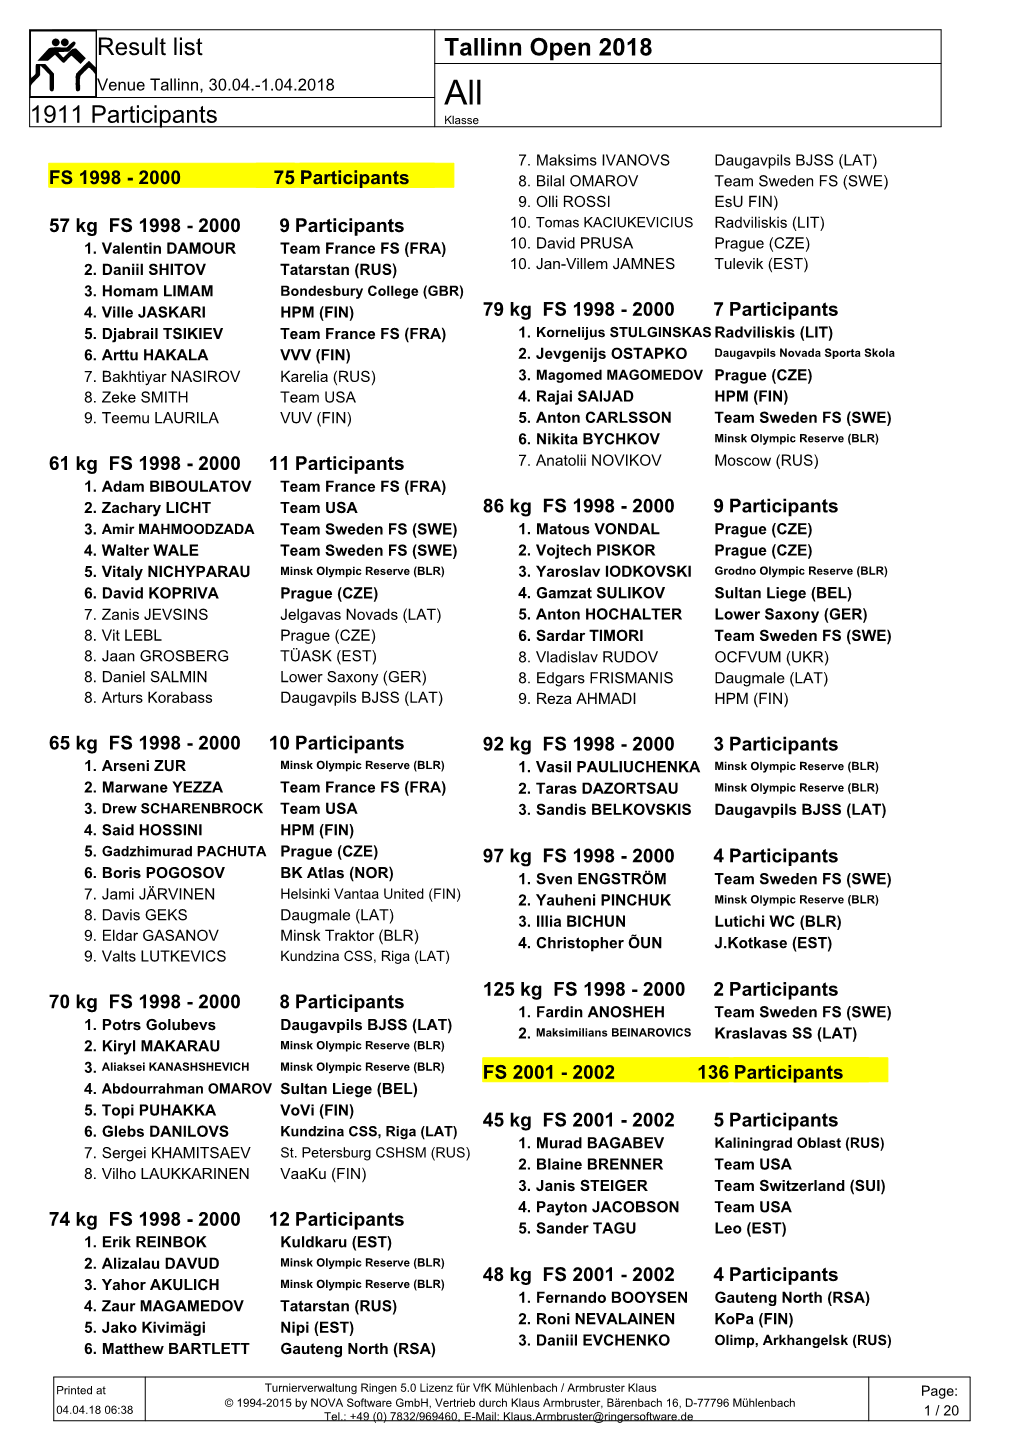 Tallinn Open 2018 1911 Participants Result List